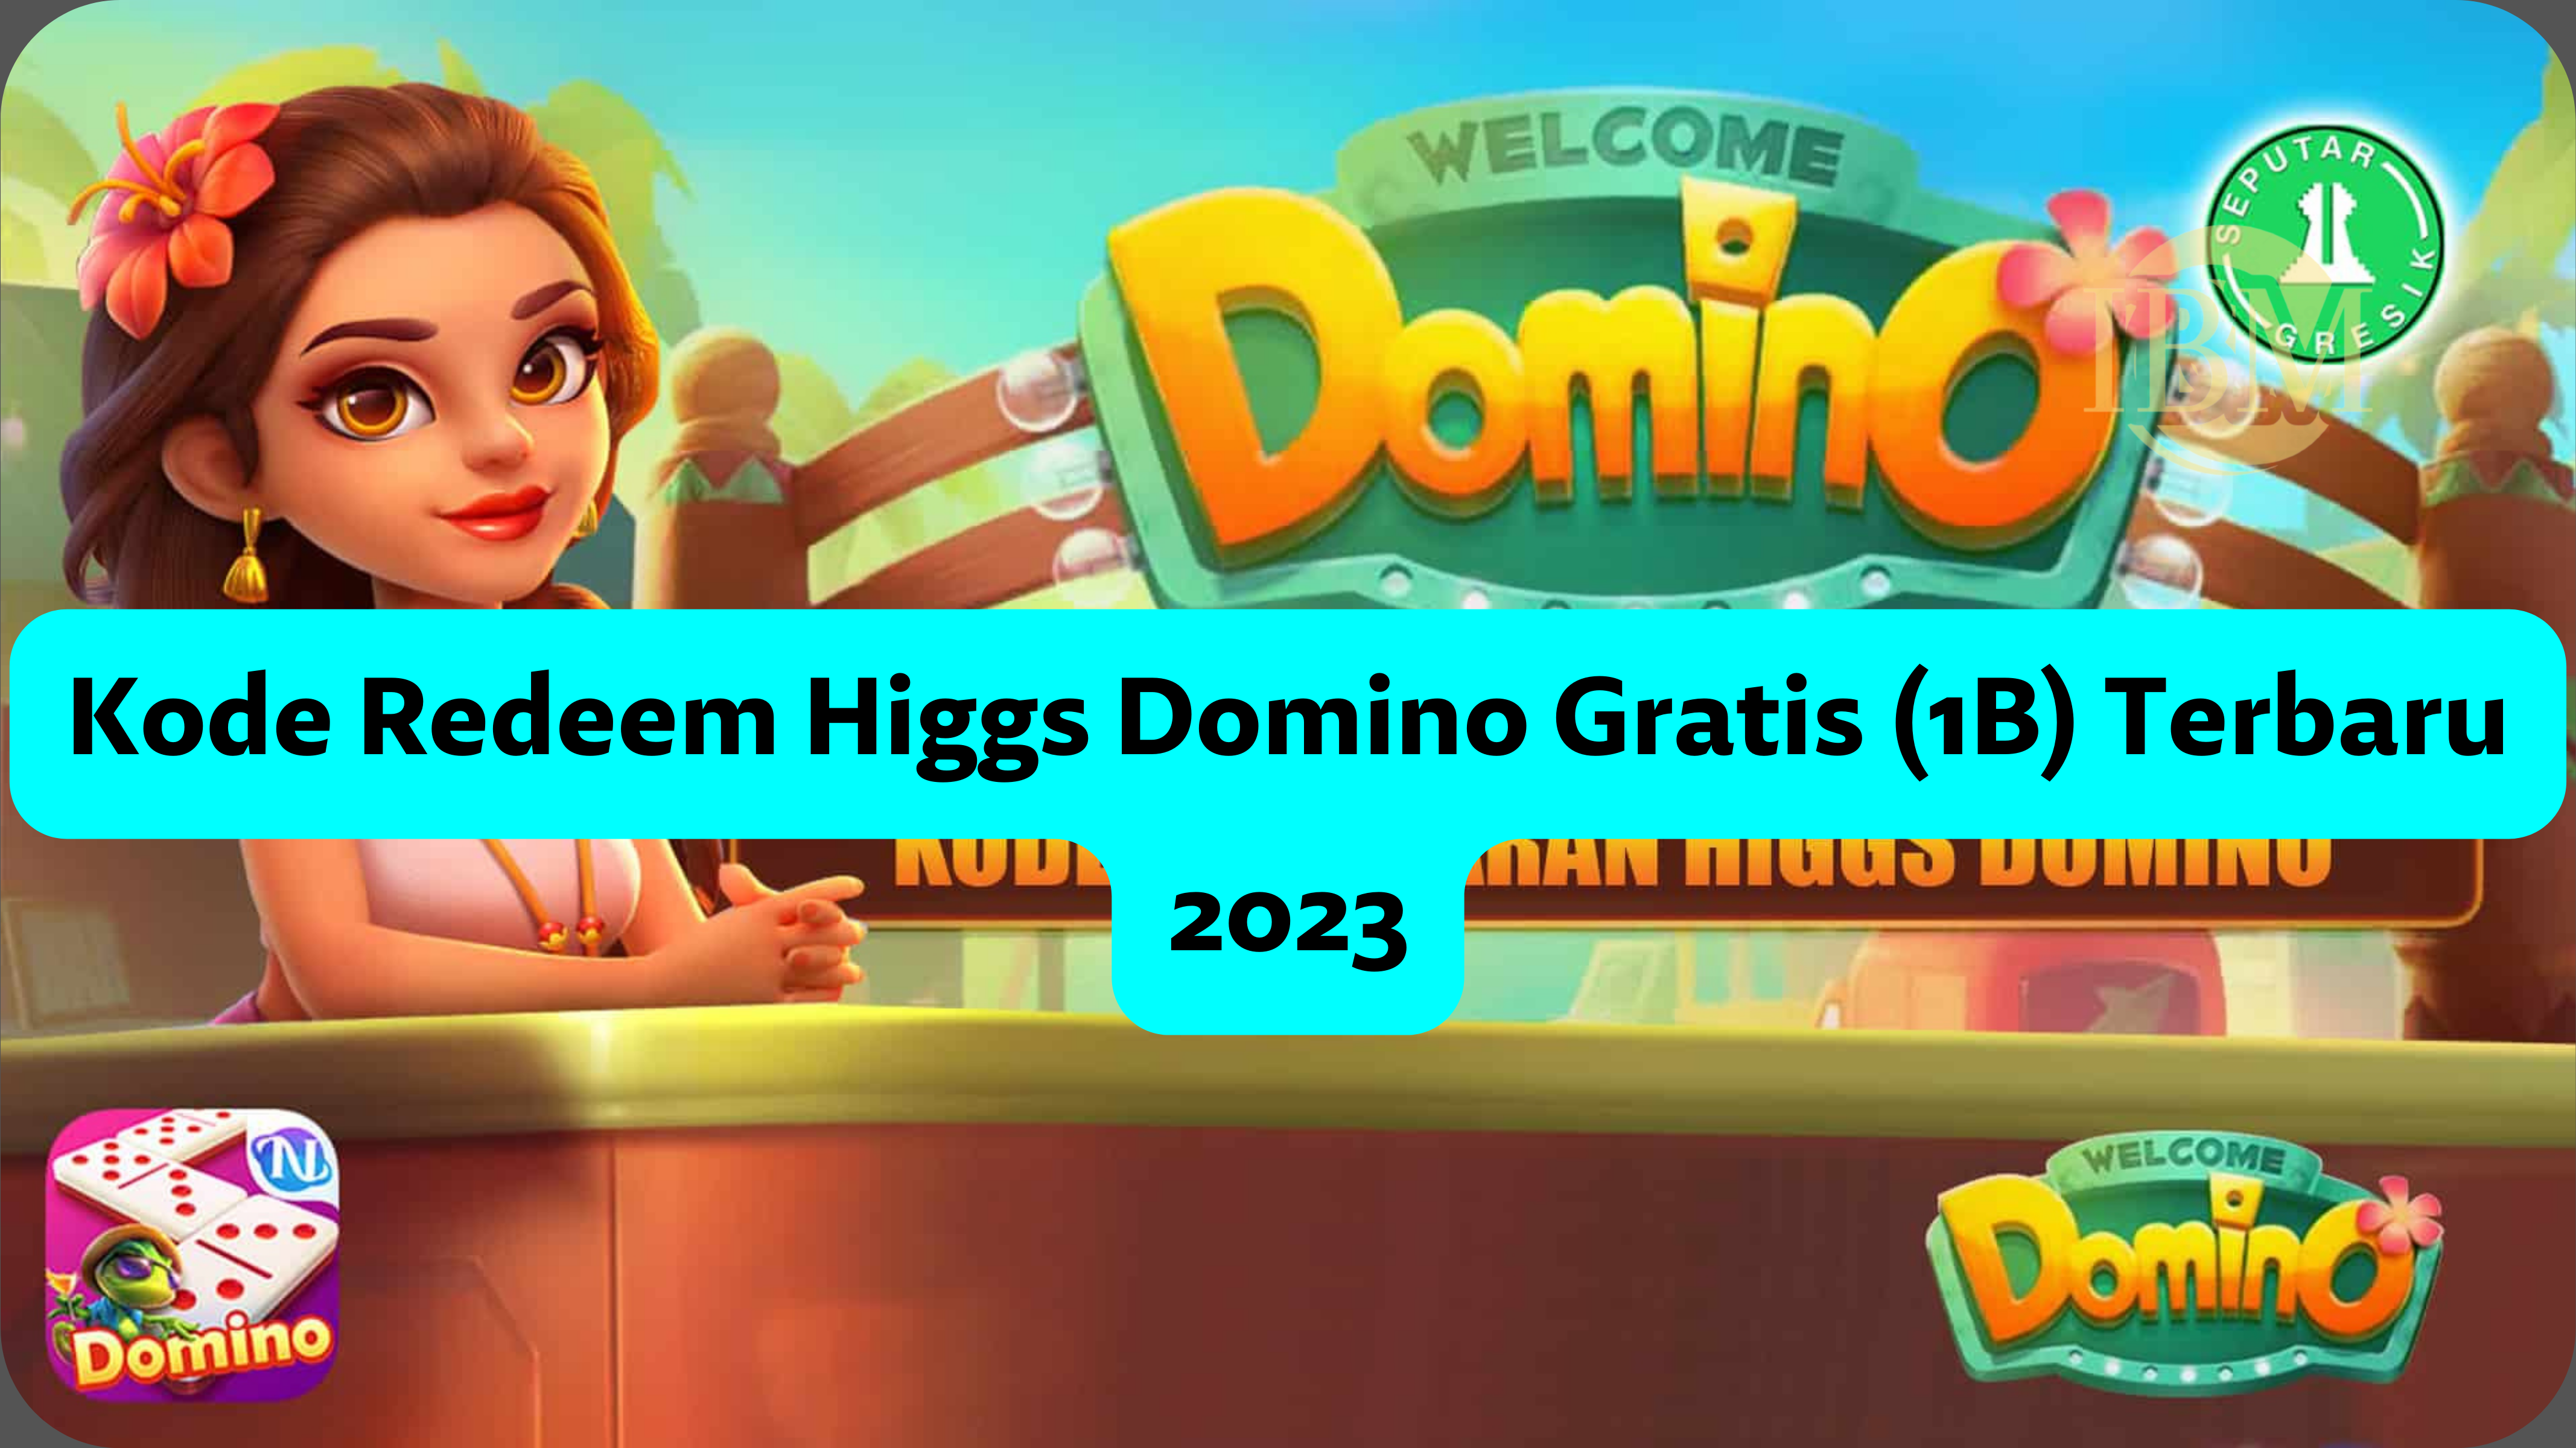 Kode Redeem Higgs Domino Gratis (1B) Terbaru 2023